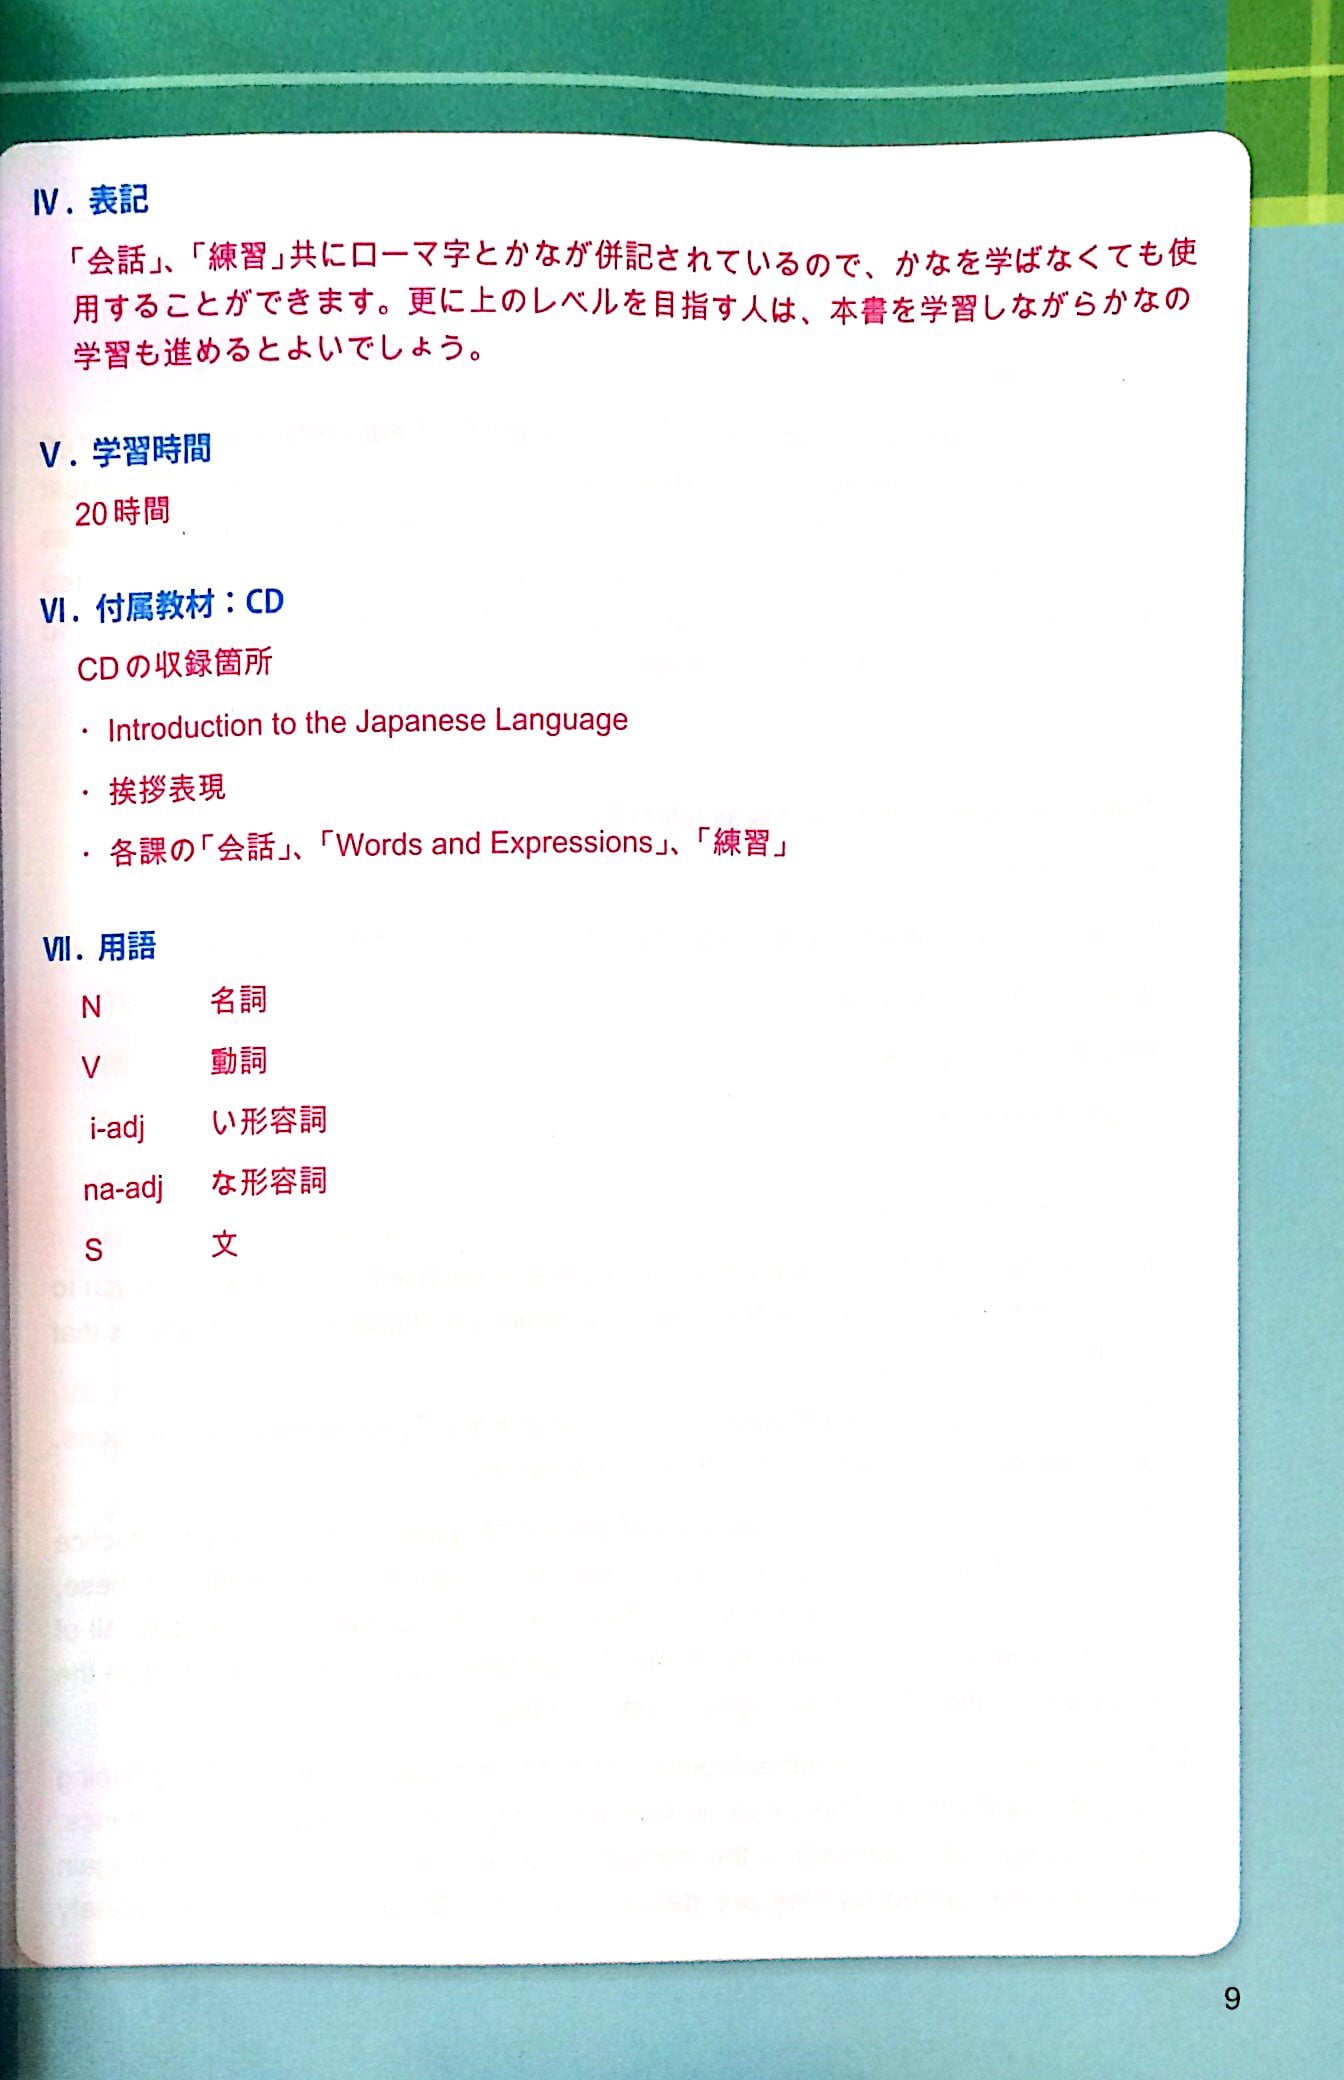 Tự Học Đàm Thoại Tiếng Nhật - Dành Cho Người Mới Bắt Đầu PDF